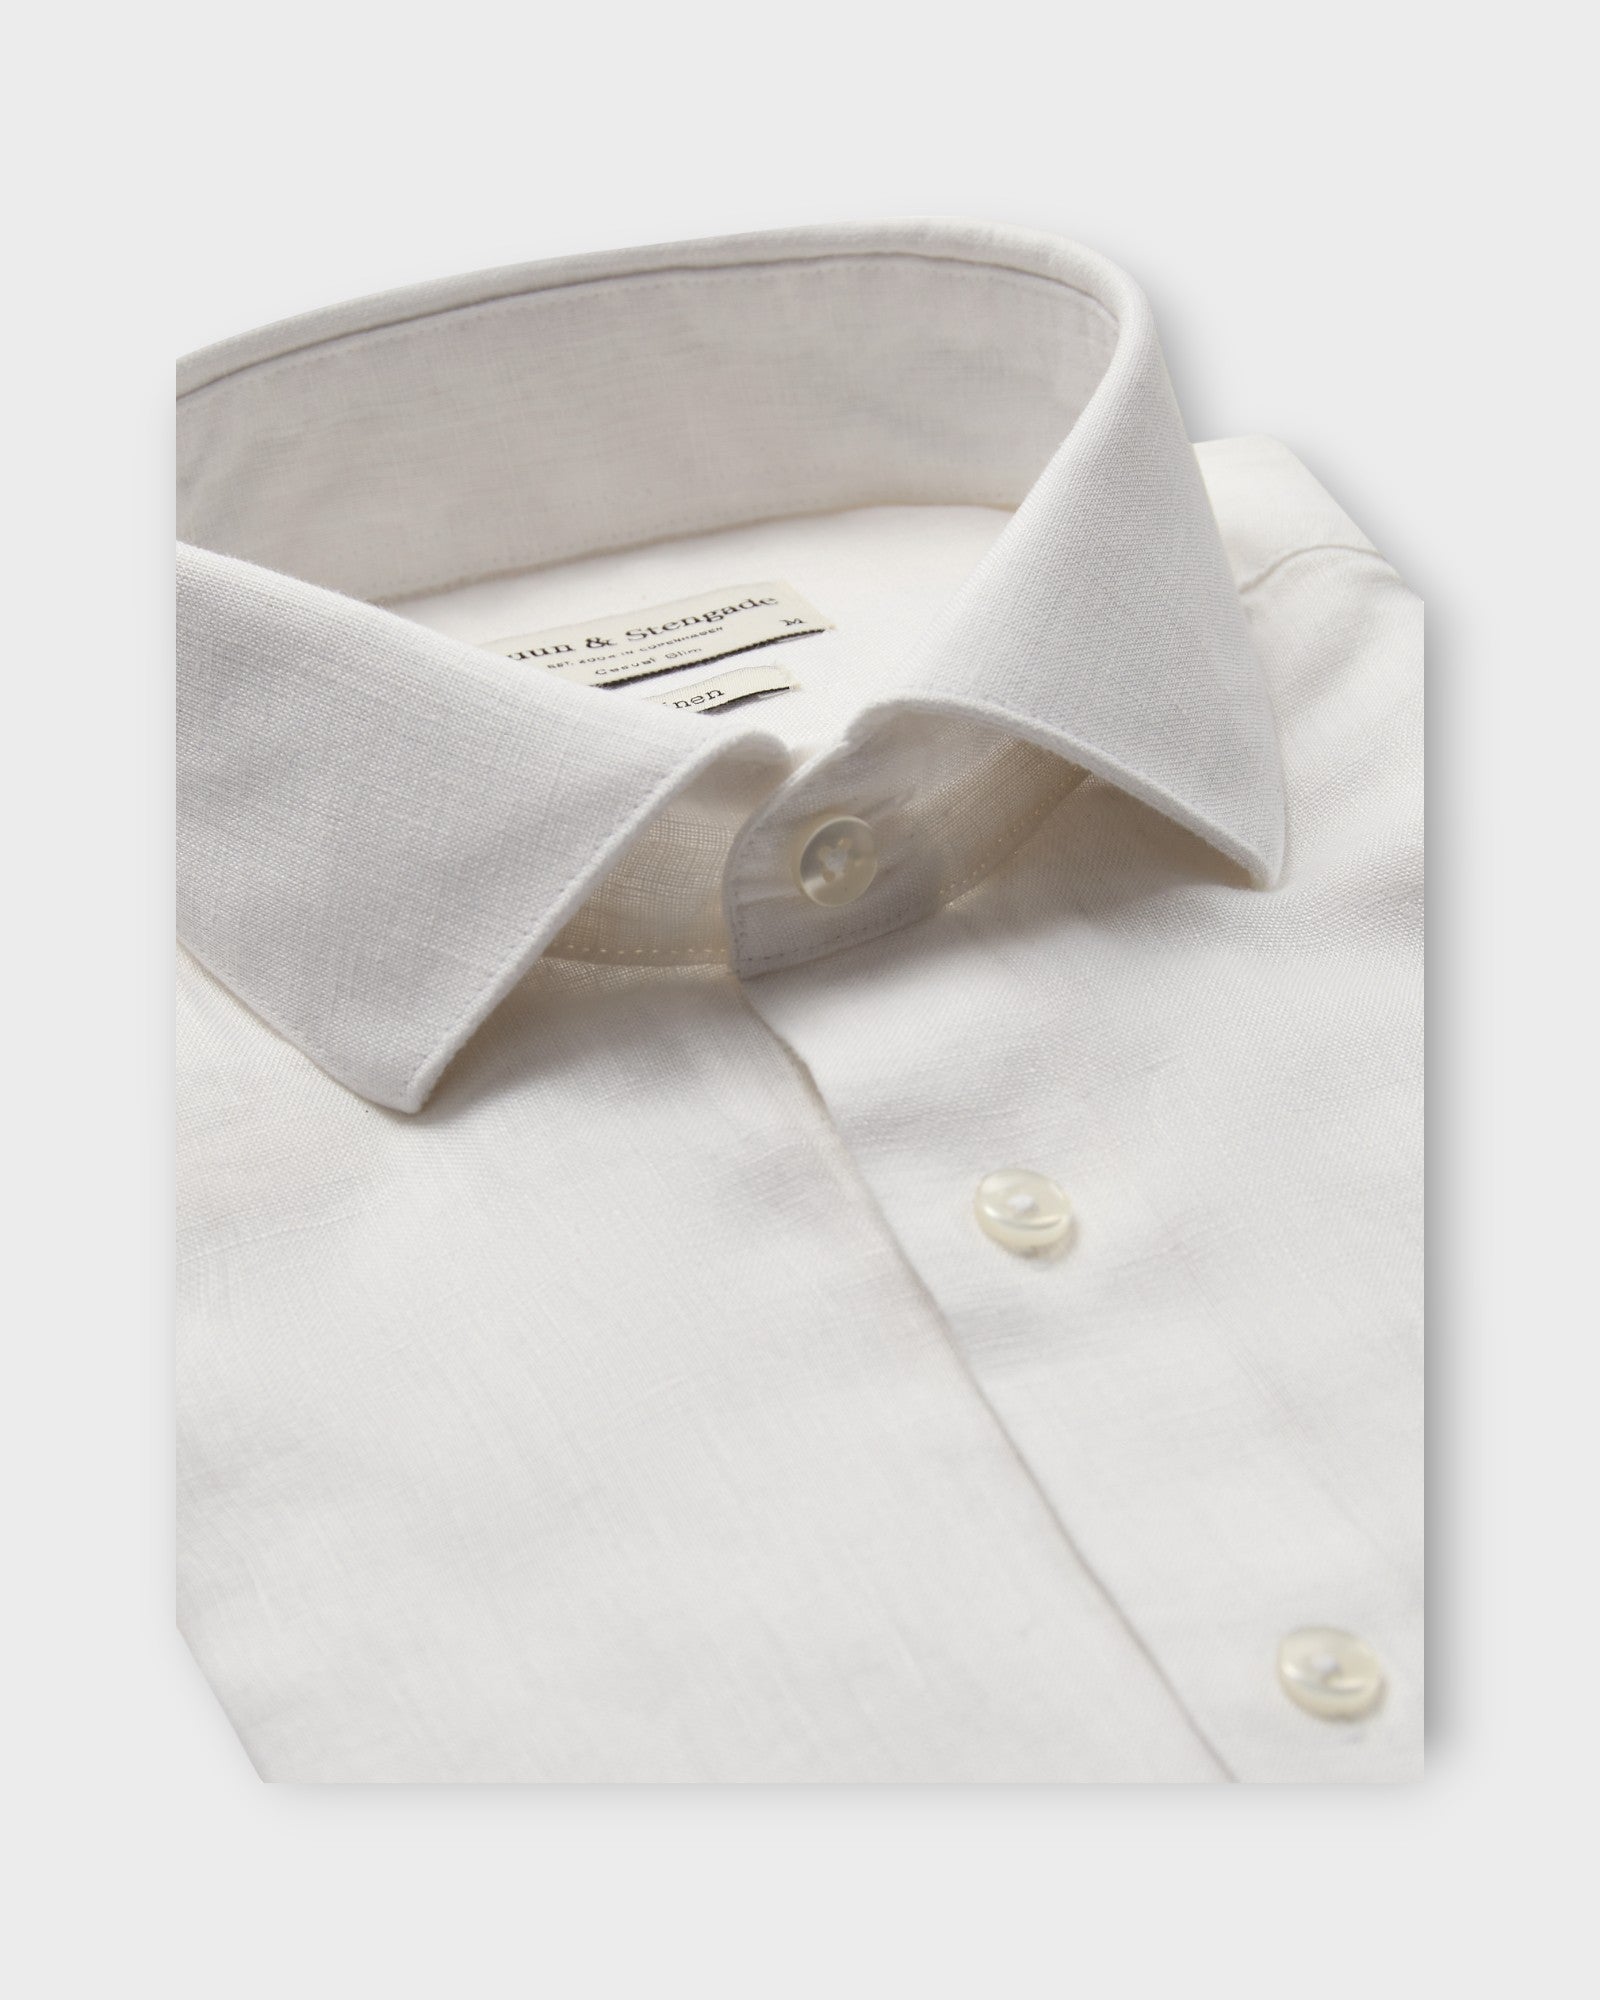 Perth Casual Slim Fit Shirt White fra Bruun og Stengade. Langærmet hvid hørskjorte til mænd. Her set forfra.